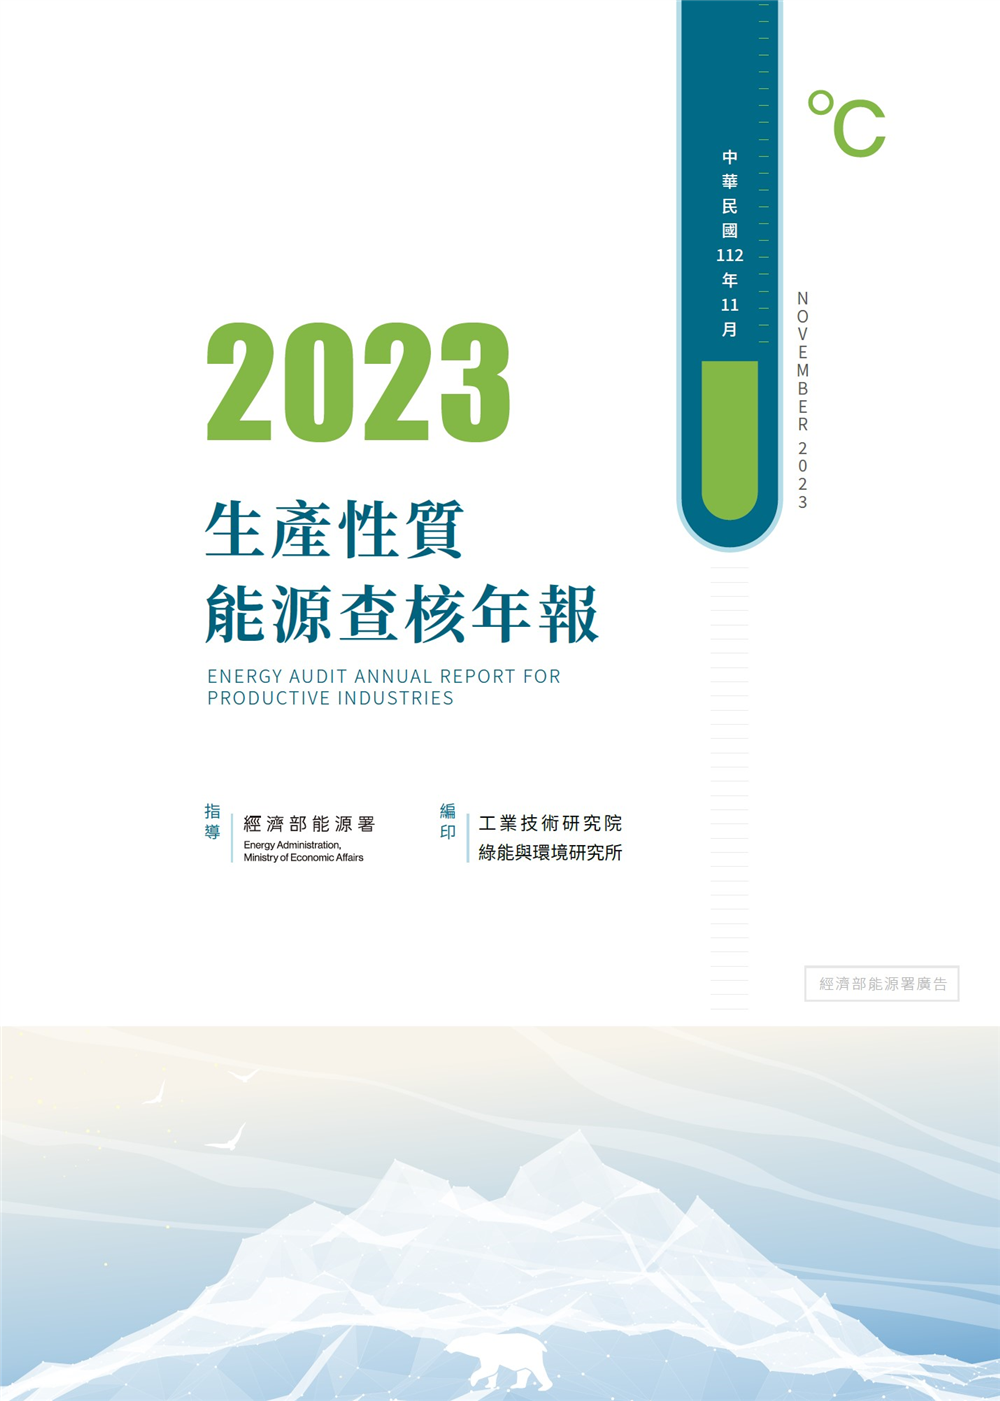 2023能源查核年報 的封面圖